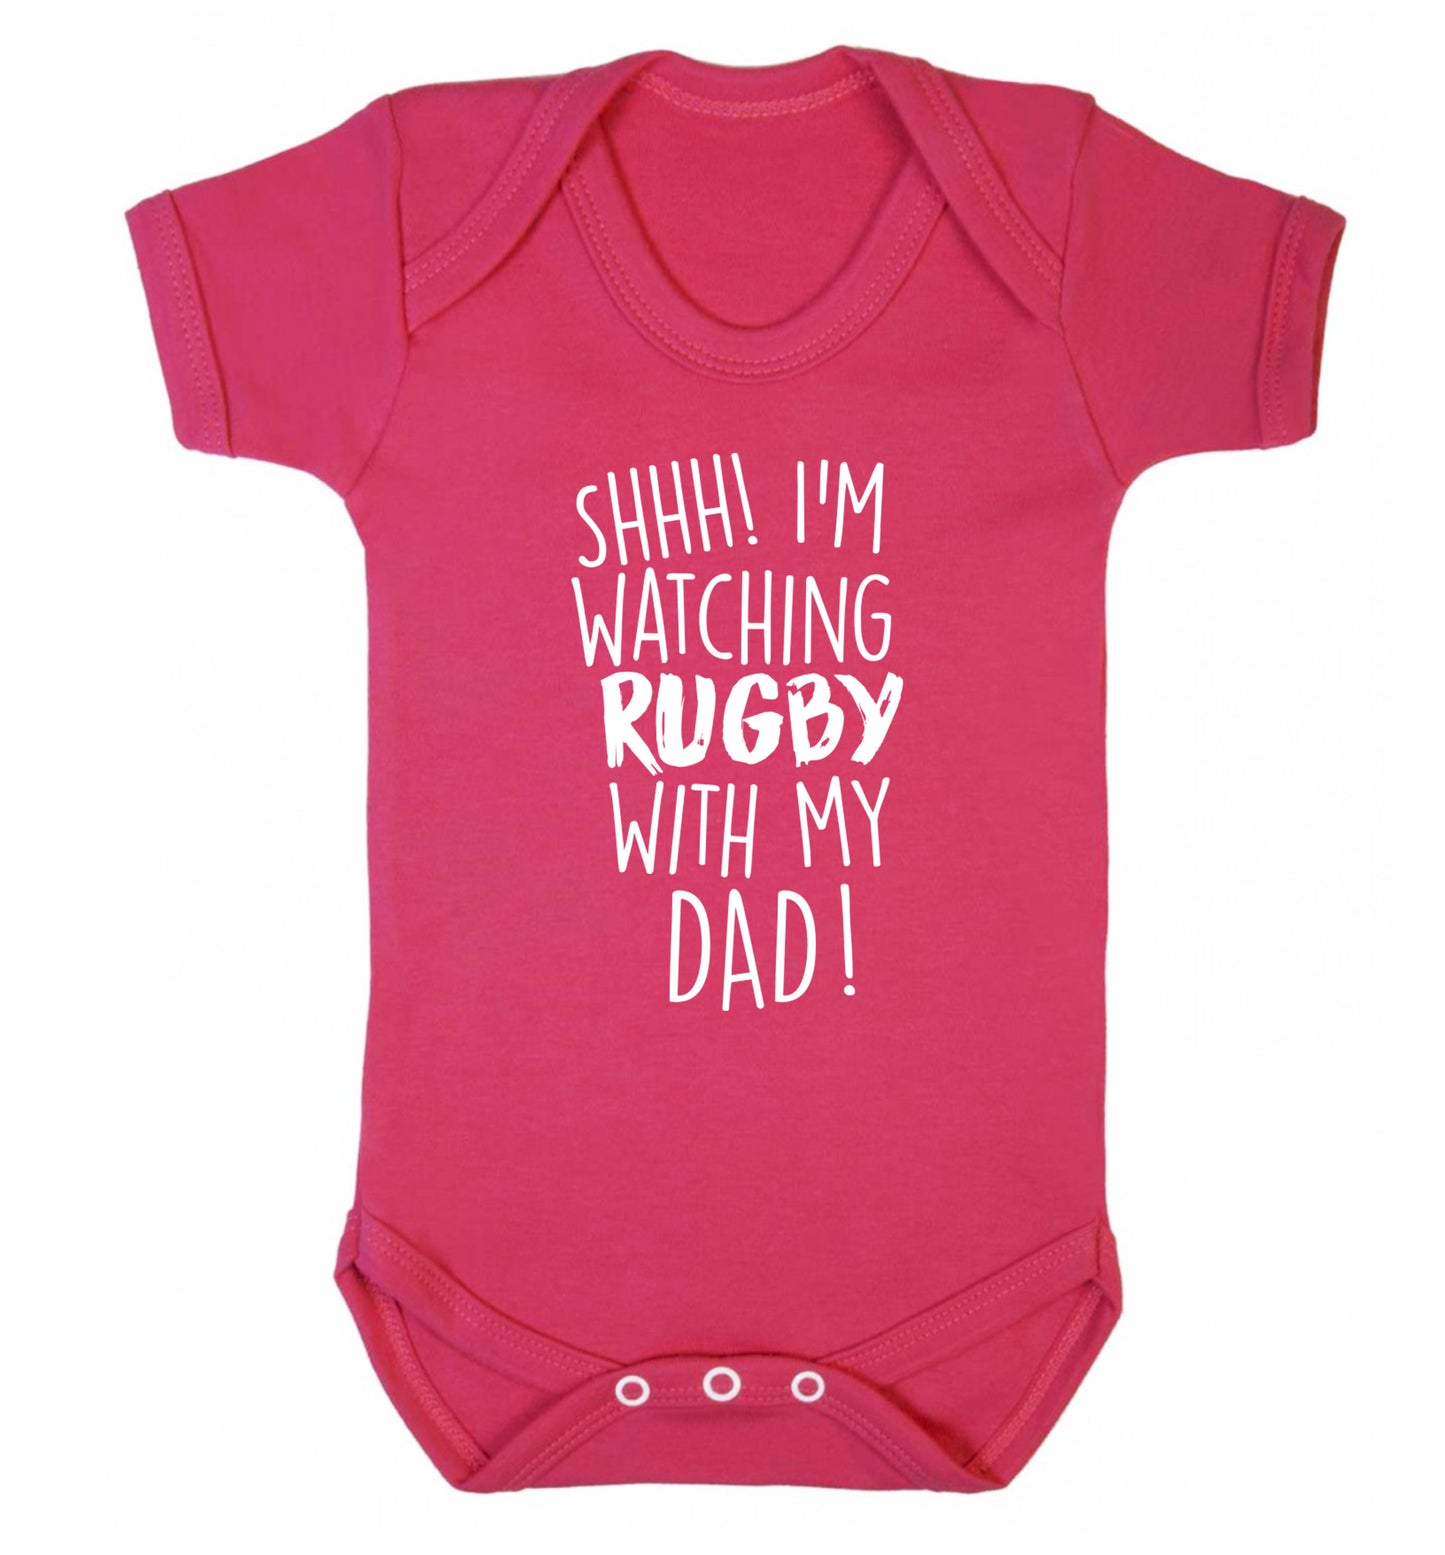 Shh... I'm watching rugby with my dad Baby Vest dark pink 18-24 months